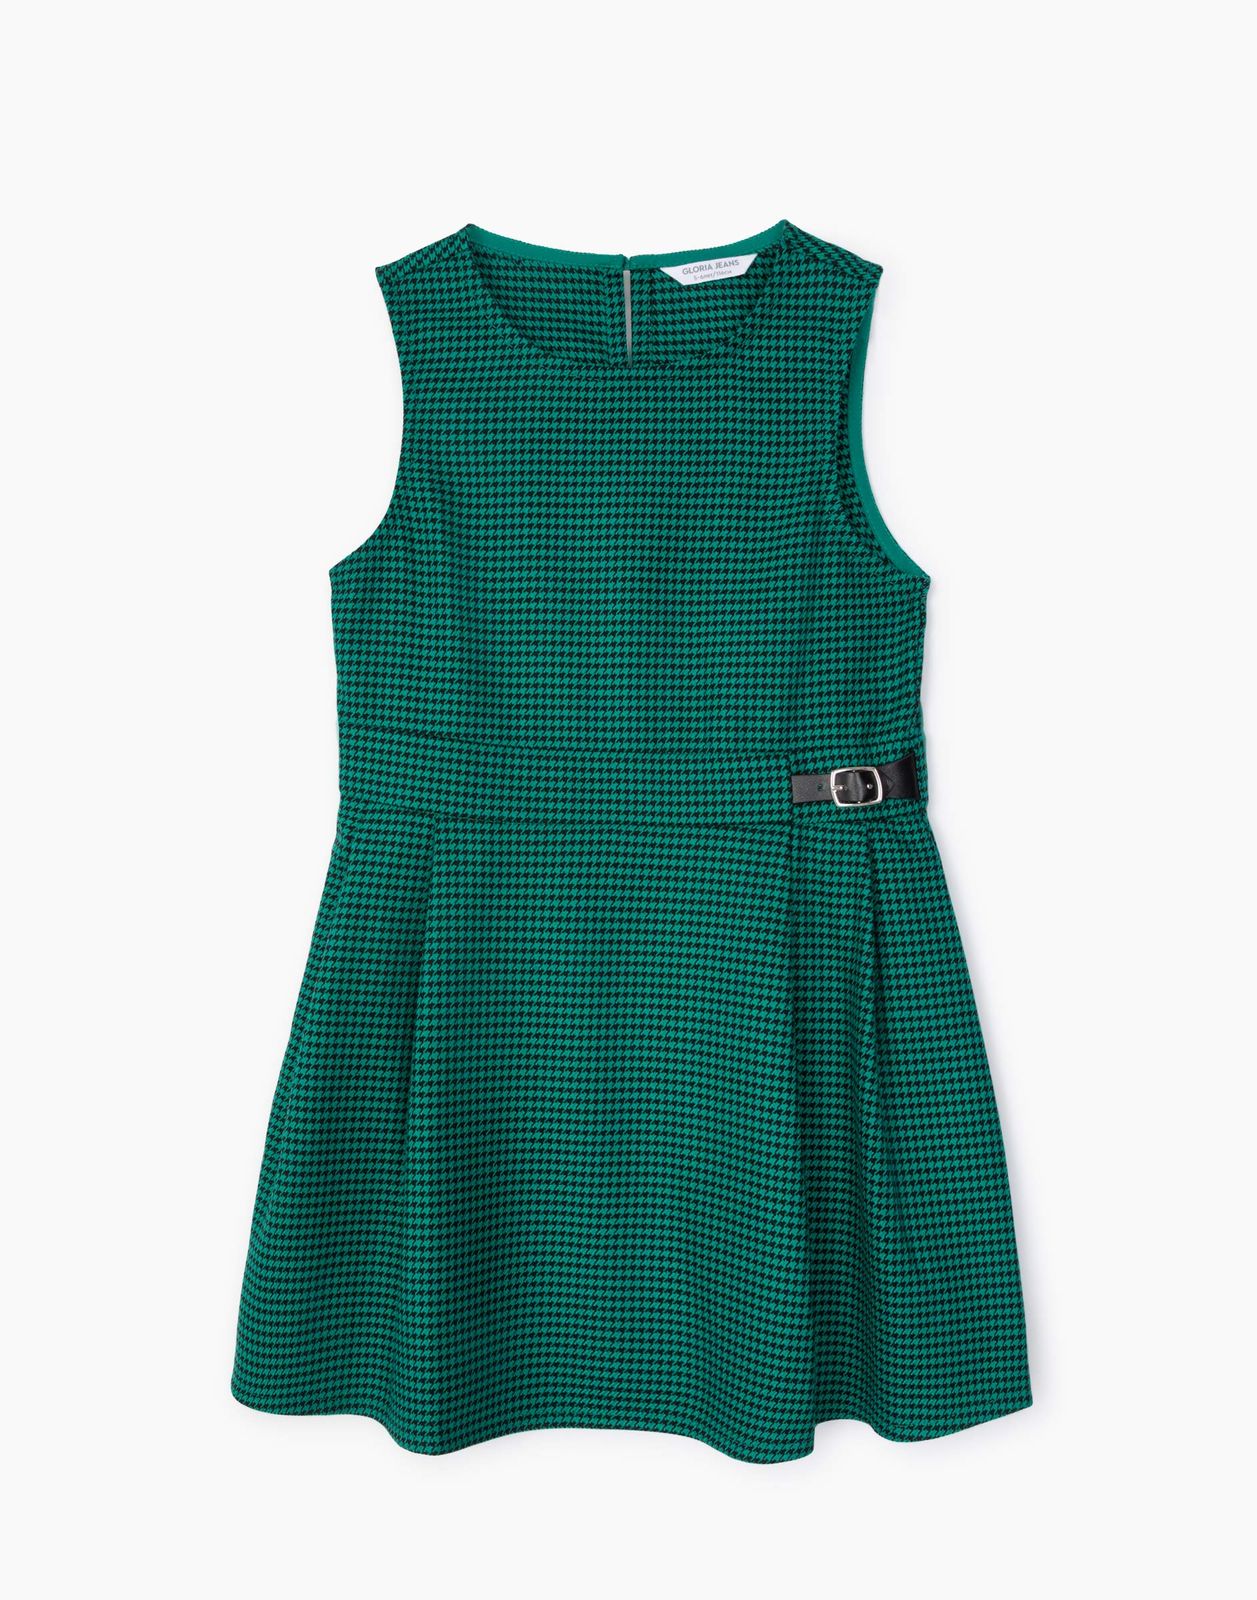 Платье детское Gloria Jeans GDR027840, зеленый/черный, 110